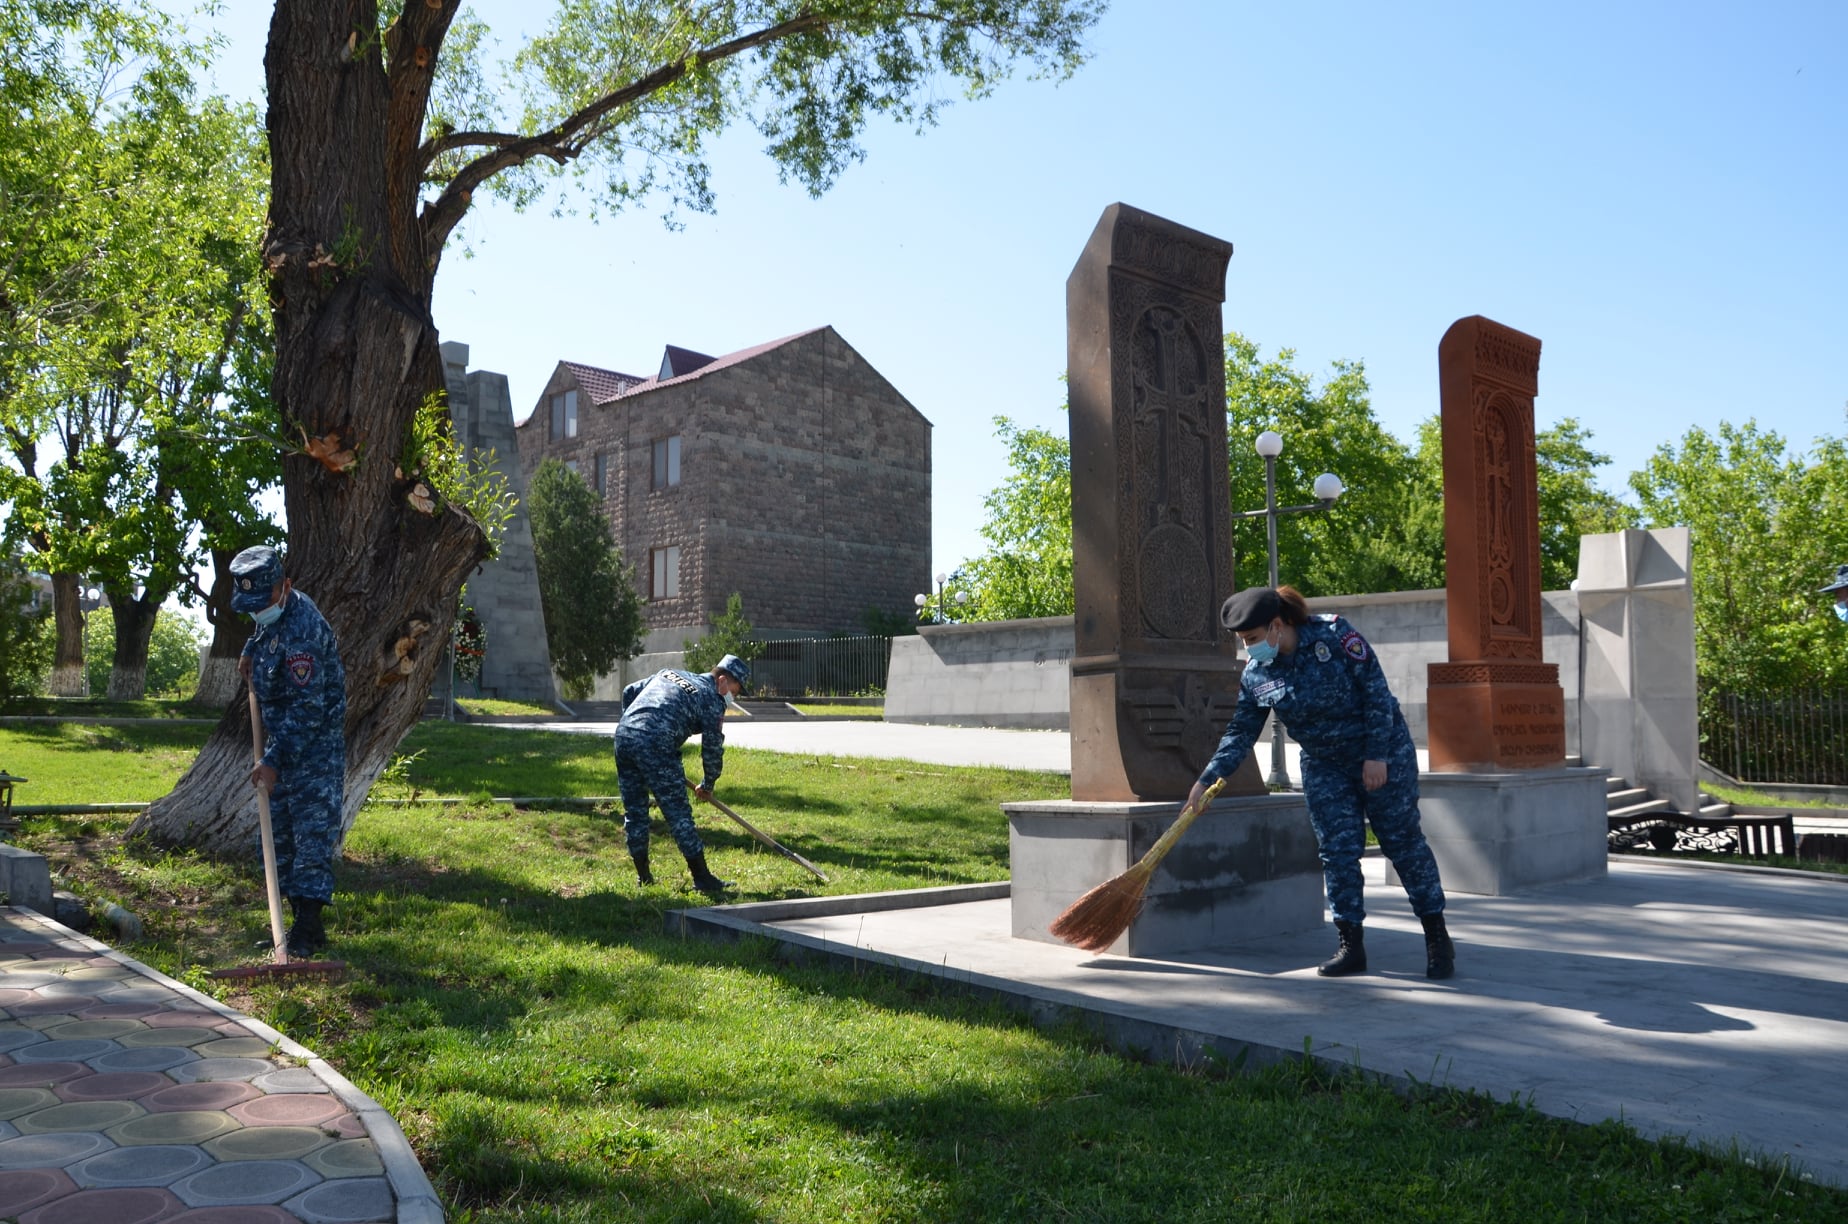 Մաքրվել և կանաչապատվել է «Ապրիլյան և Արցախյան պատերազմի զոհերի հիշատակին նվիրված հուշարձանների» տարածքը (լուսանկարներ)